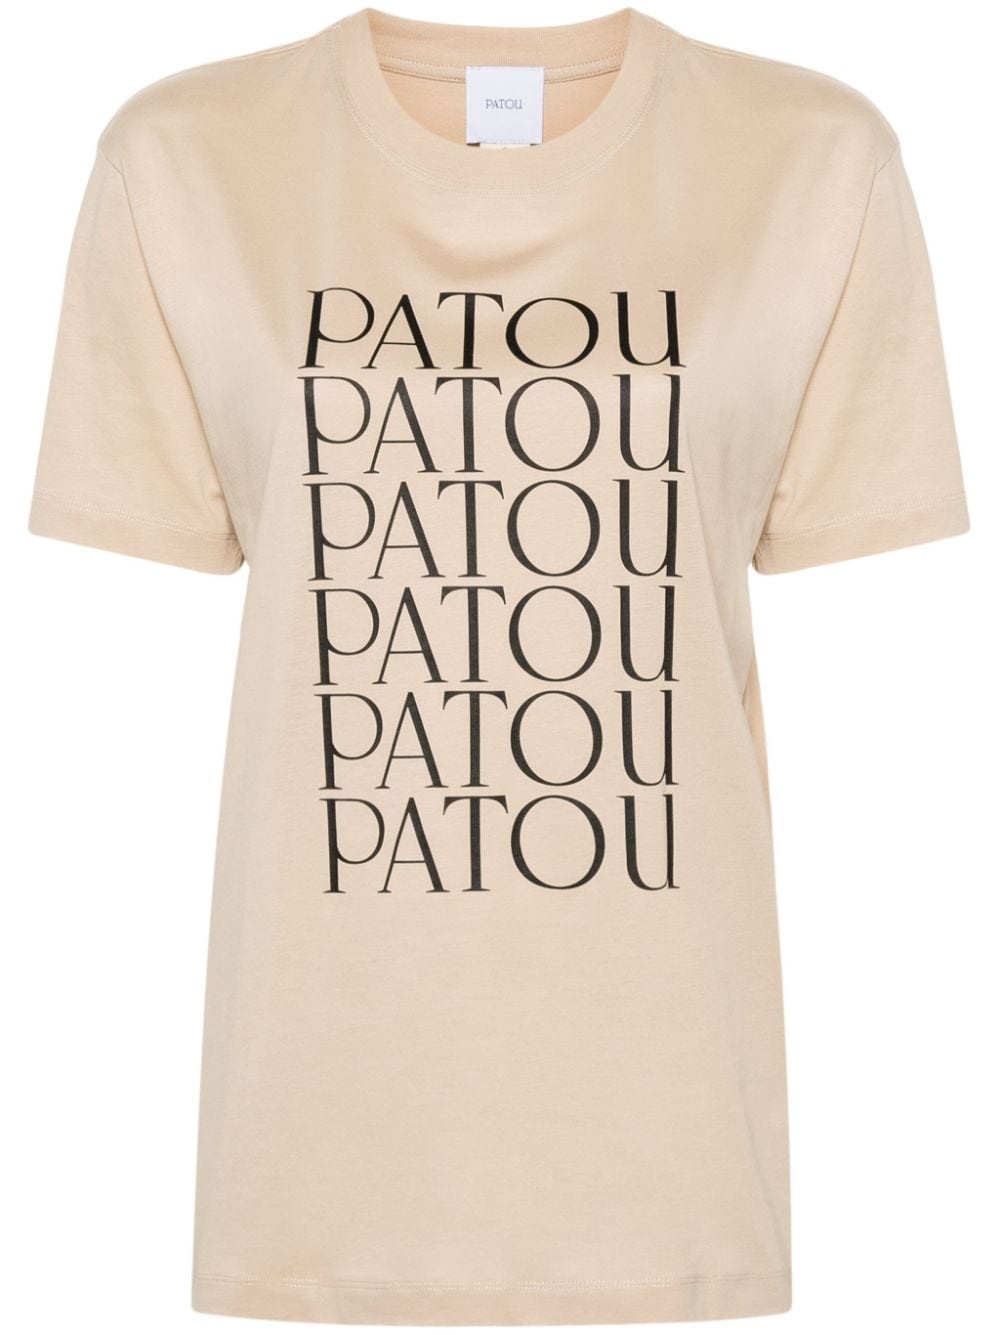 Patou Patou cotton T-shirt - 1